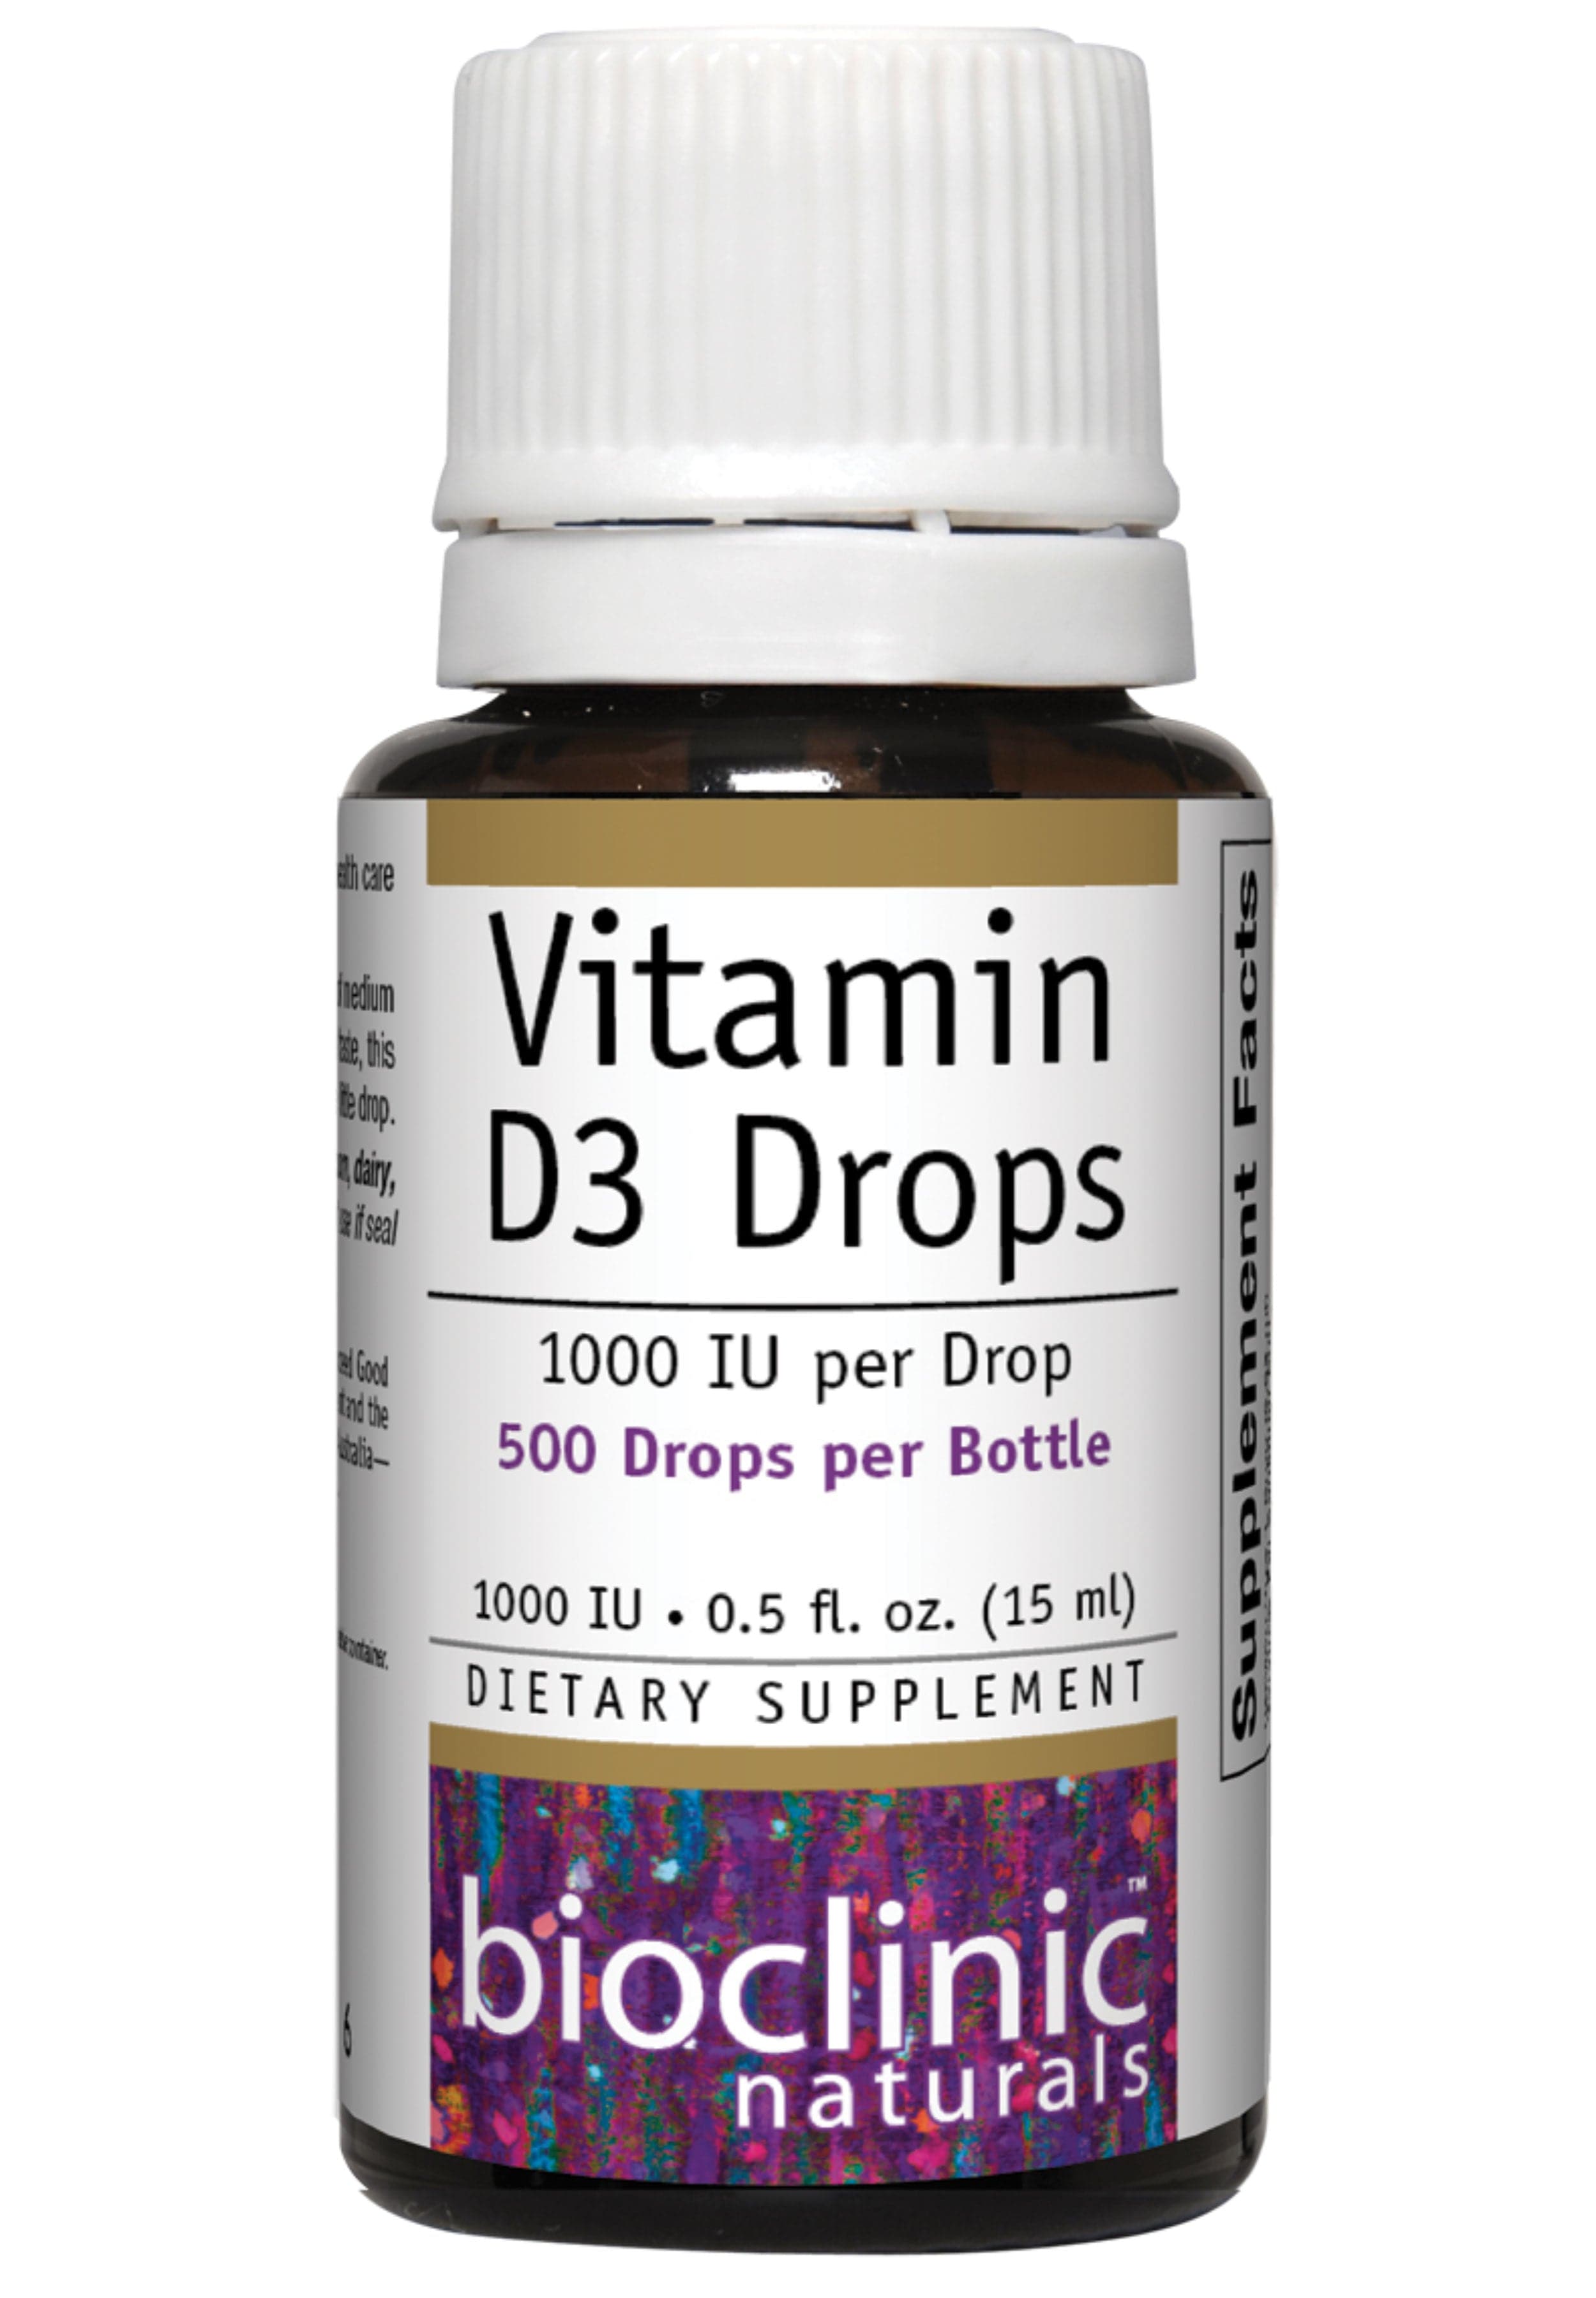 Bioclinic Naturals Vitamin D3 Drops